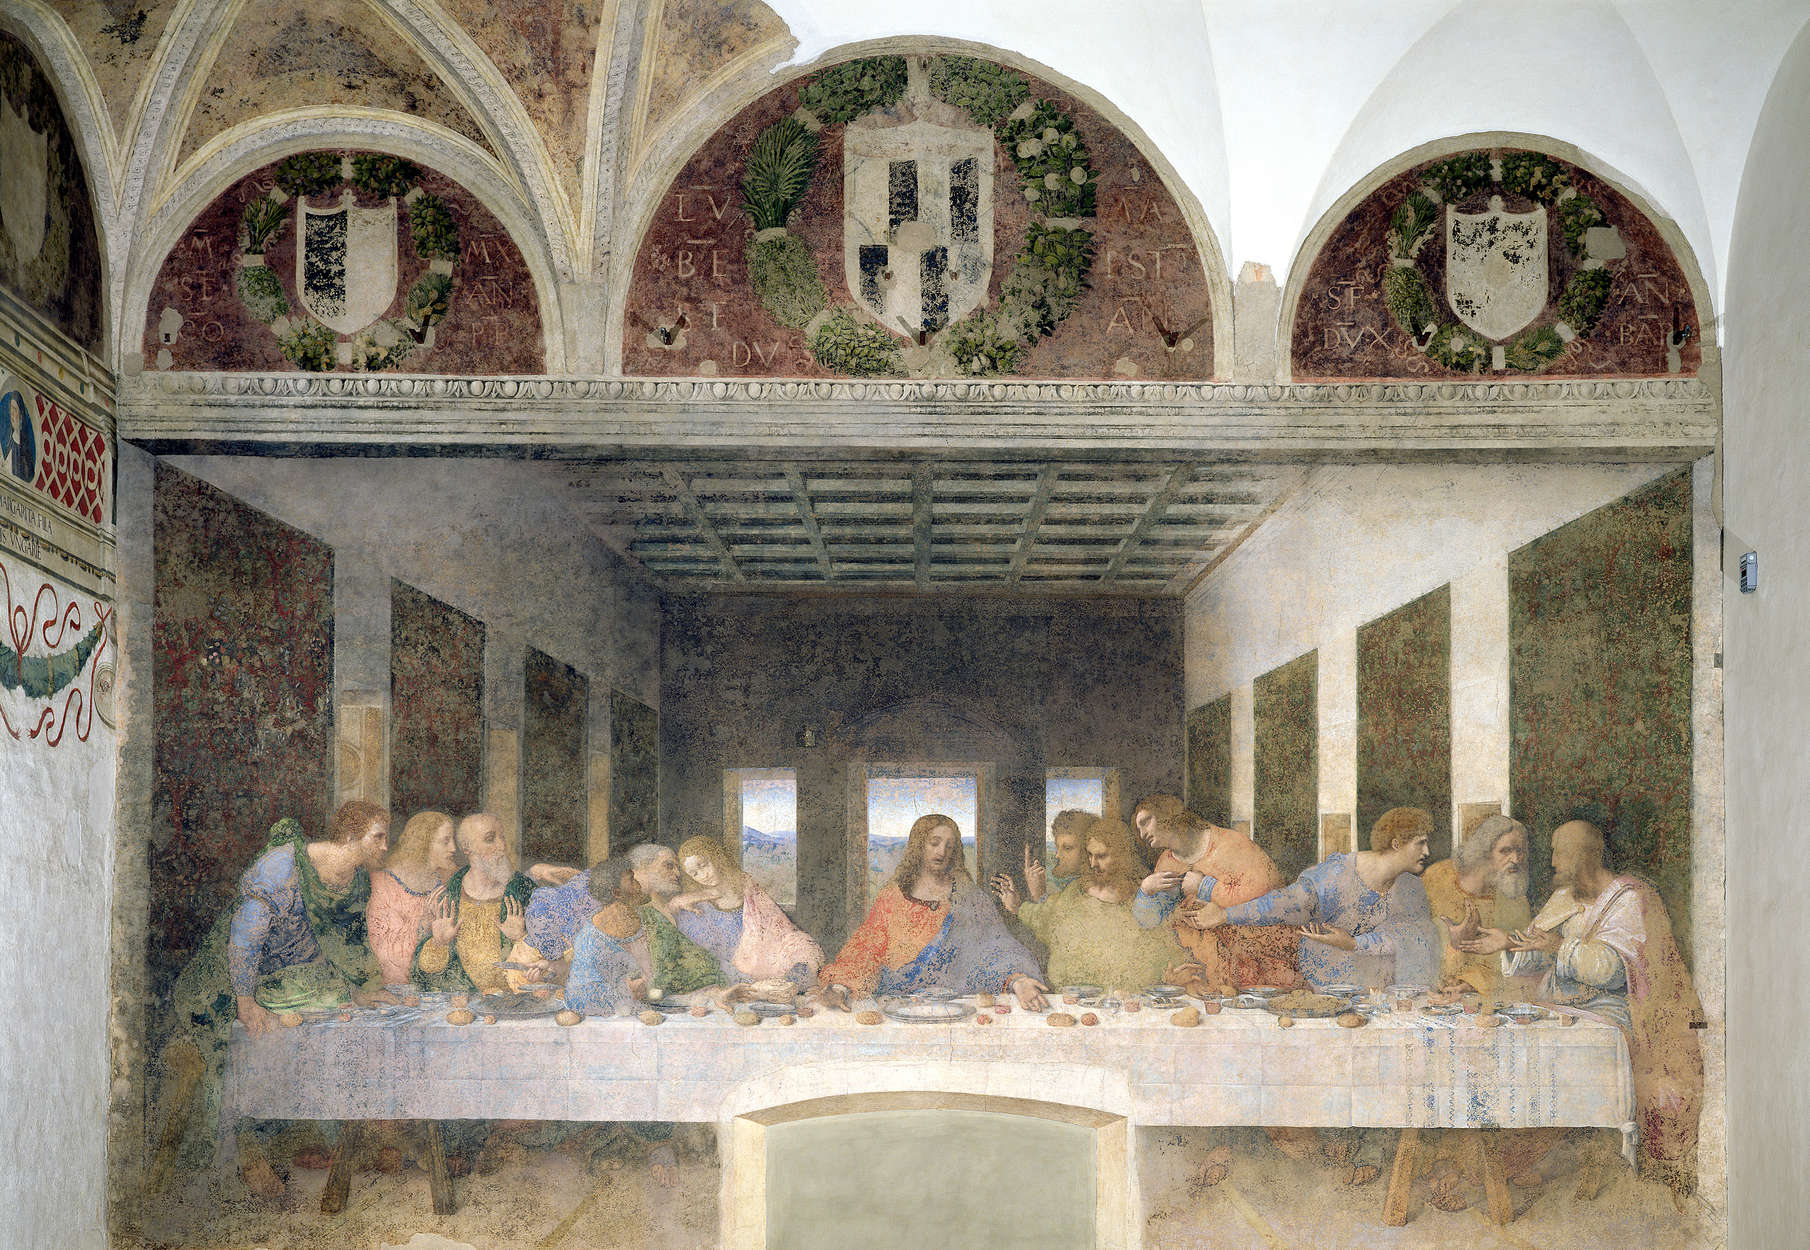             Mural "La última cena" de Leonardo da Vinci
        